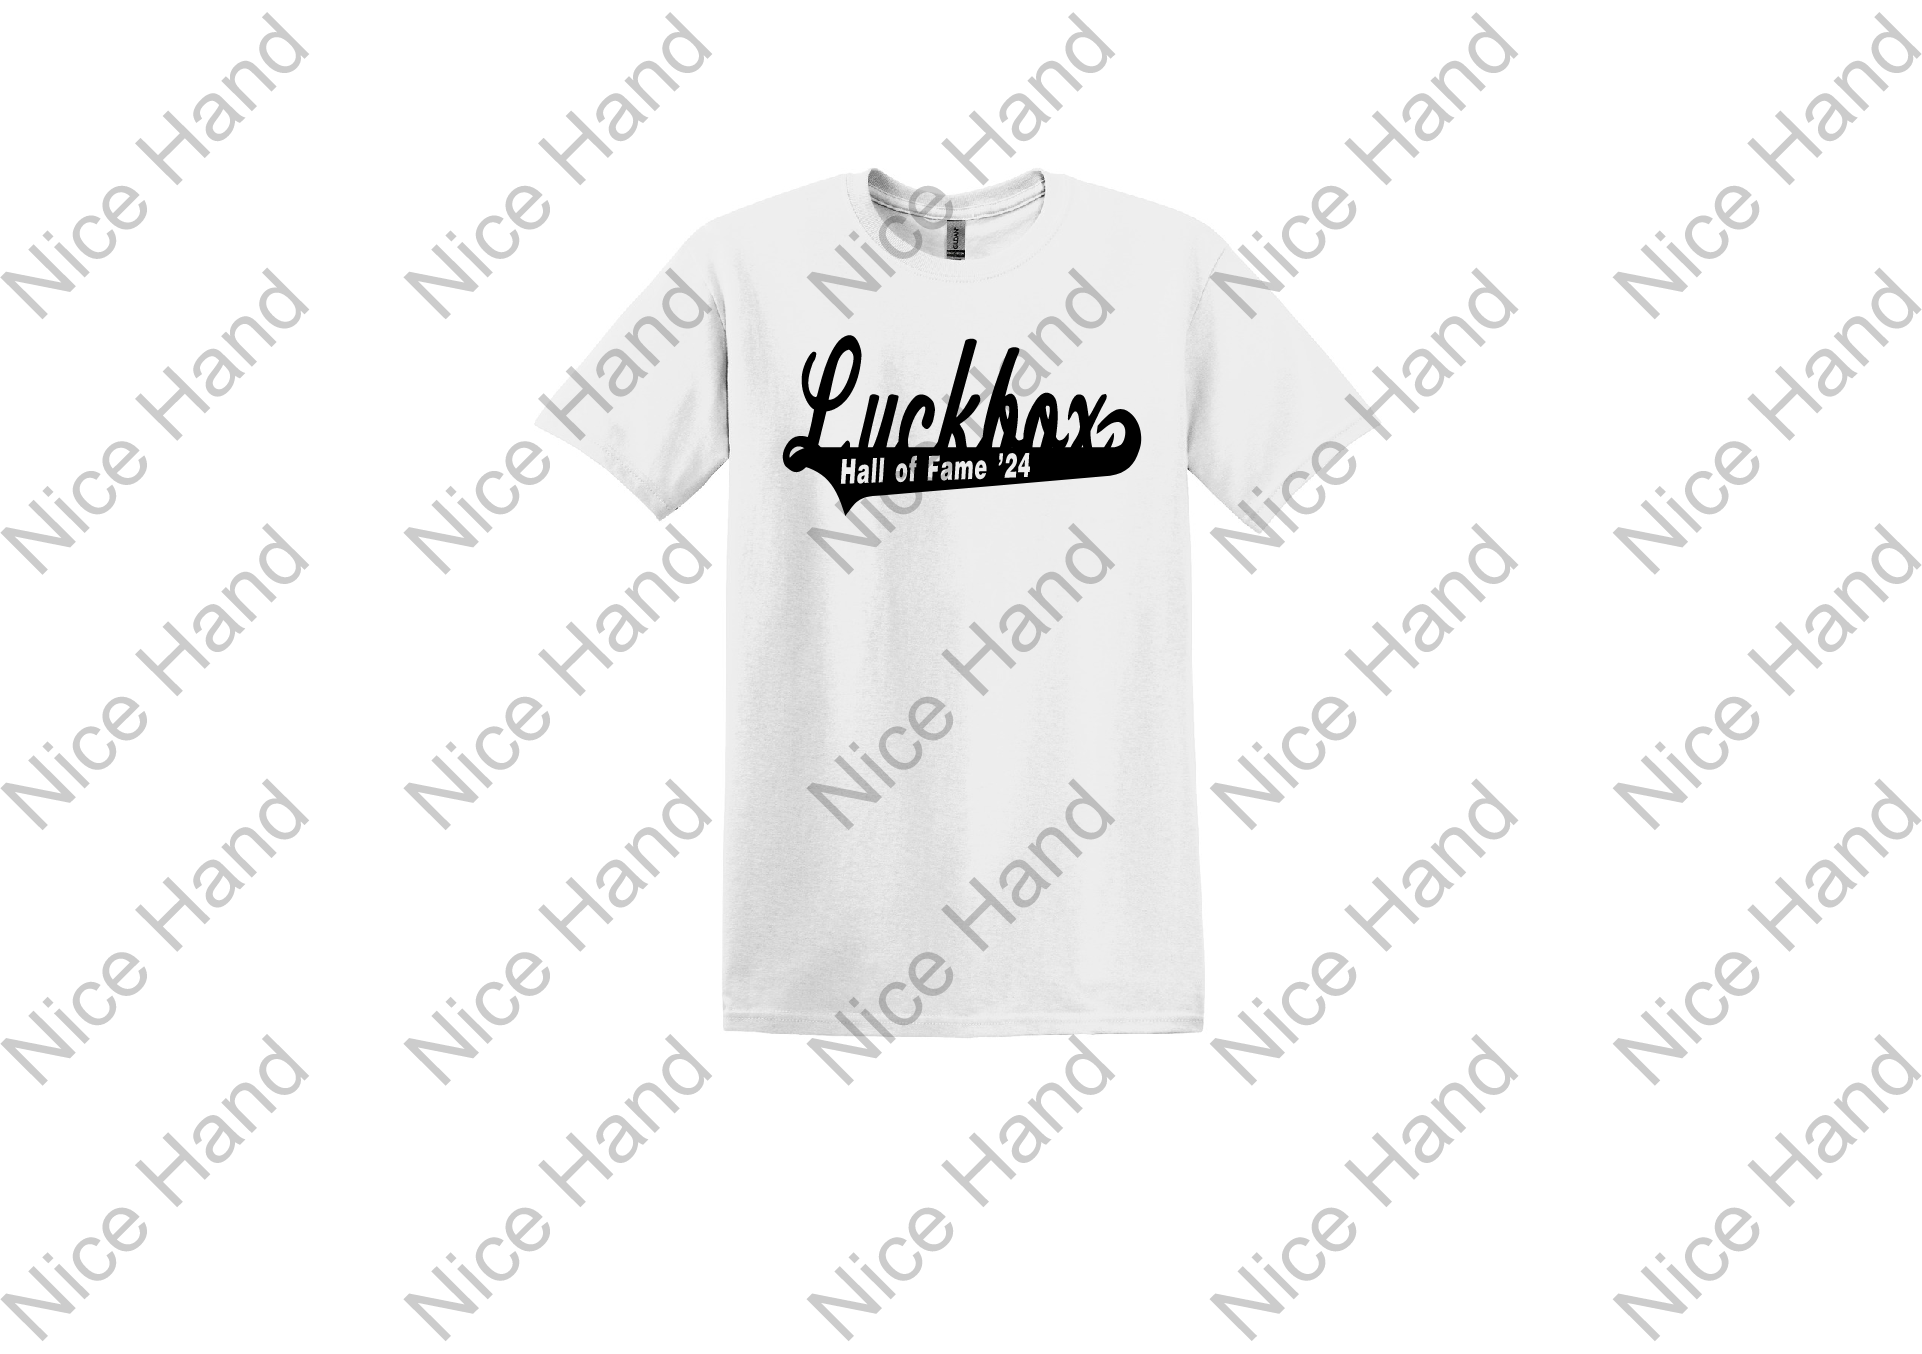 Luckbox Hall of Fame T-shirt - luckbox_black_white_9070fc76-166b-4e04-bb0b-51d80b7db2fc